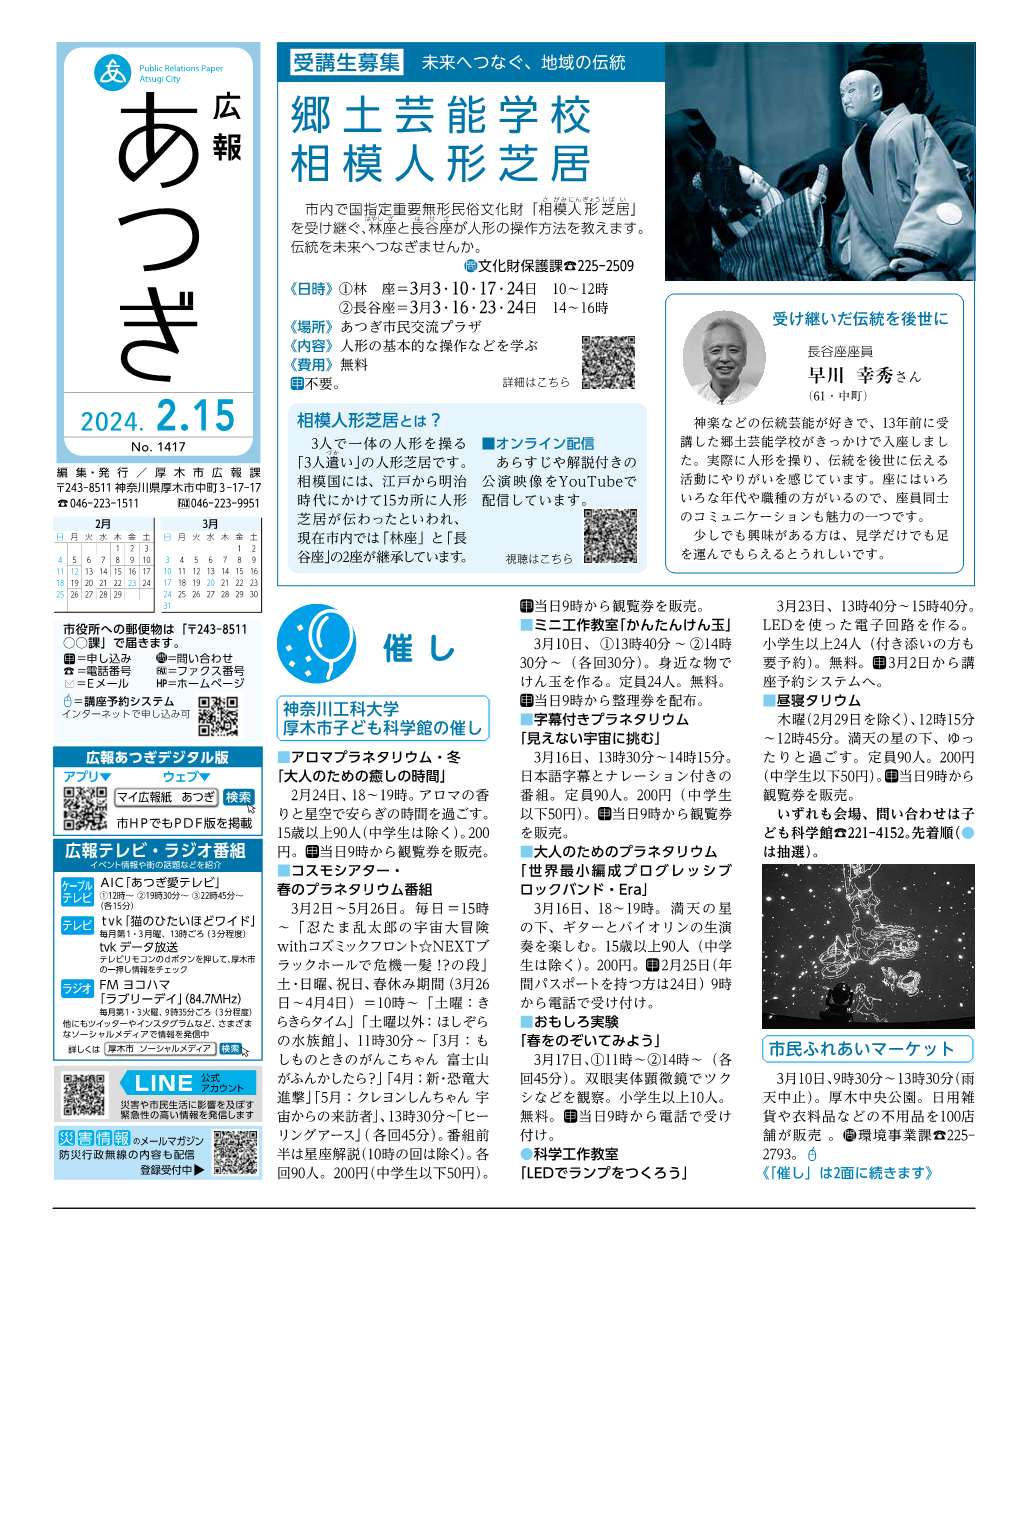 広報あつぎ2月15日号の1面のイメージ画像